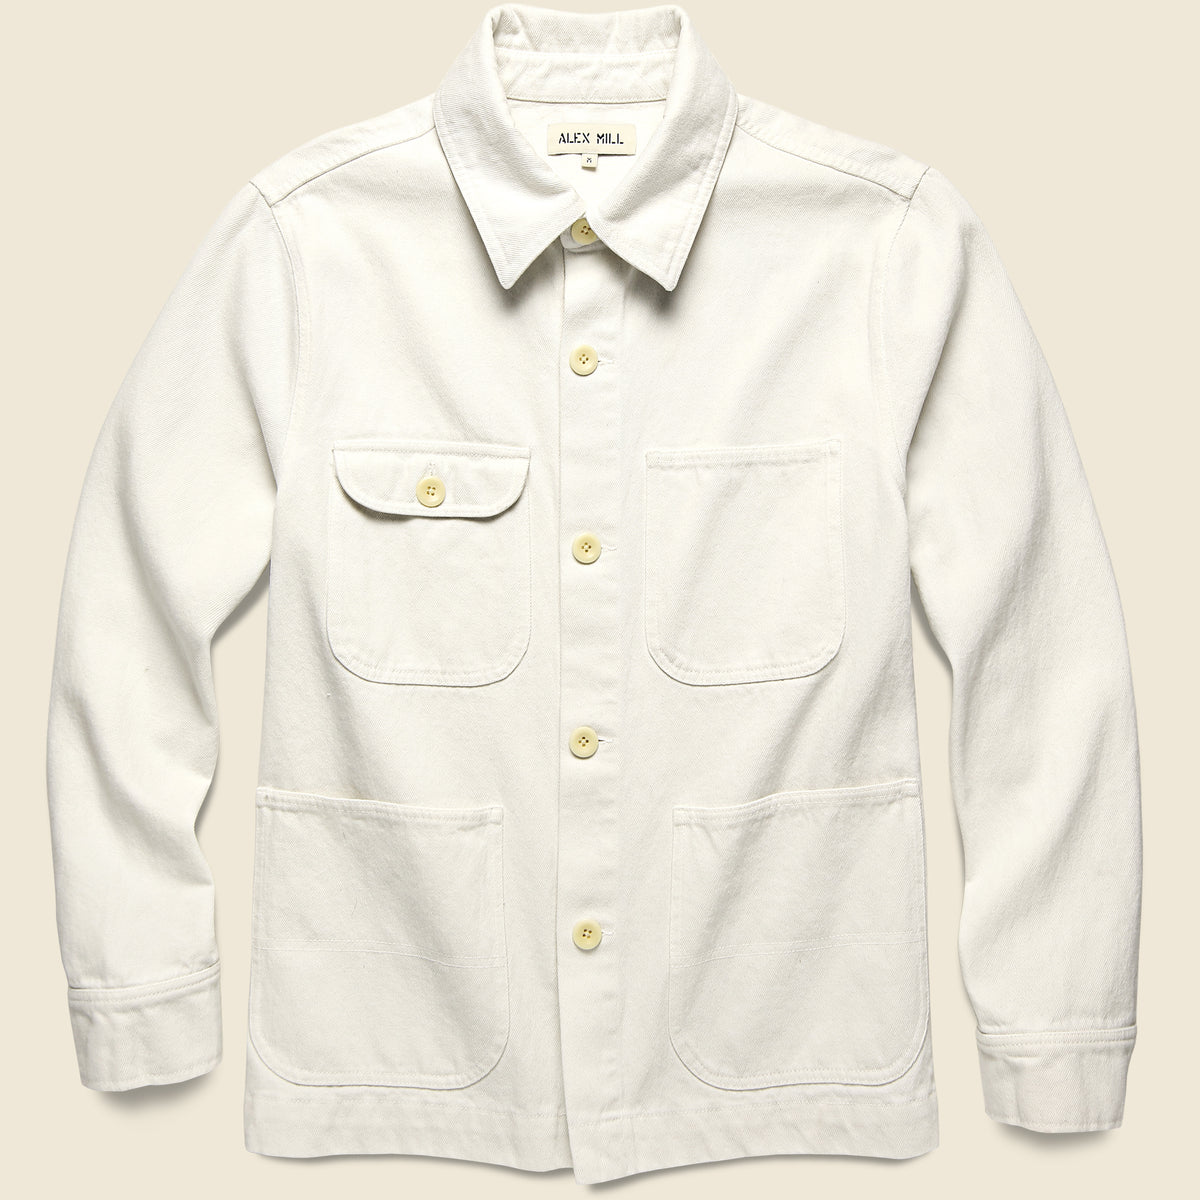 Upcycled Cotton Work Jacket - White